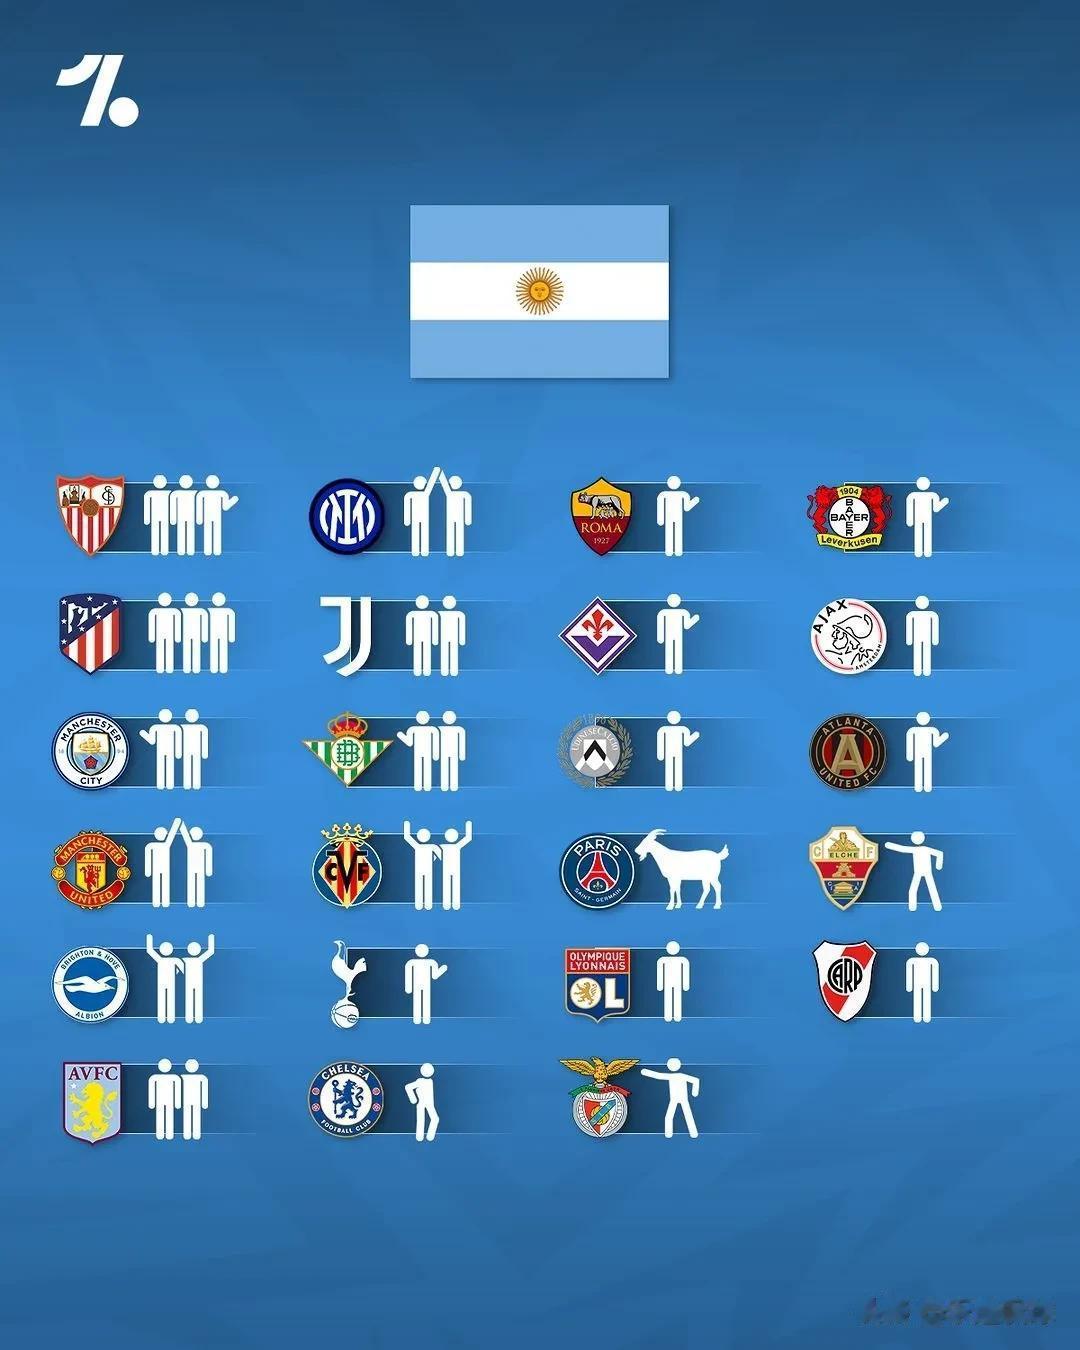 几支豪门国家队的球员的所属俱乐部构成，世界冠军阿根廷是这几支球队中最分散的，球员(1)